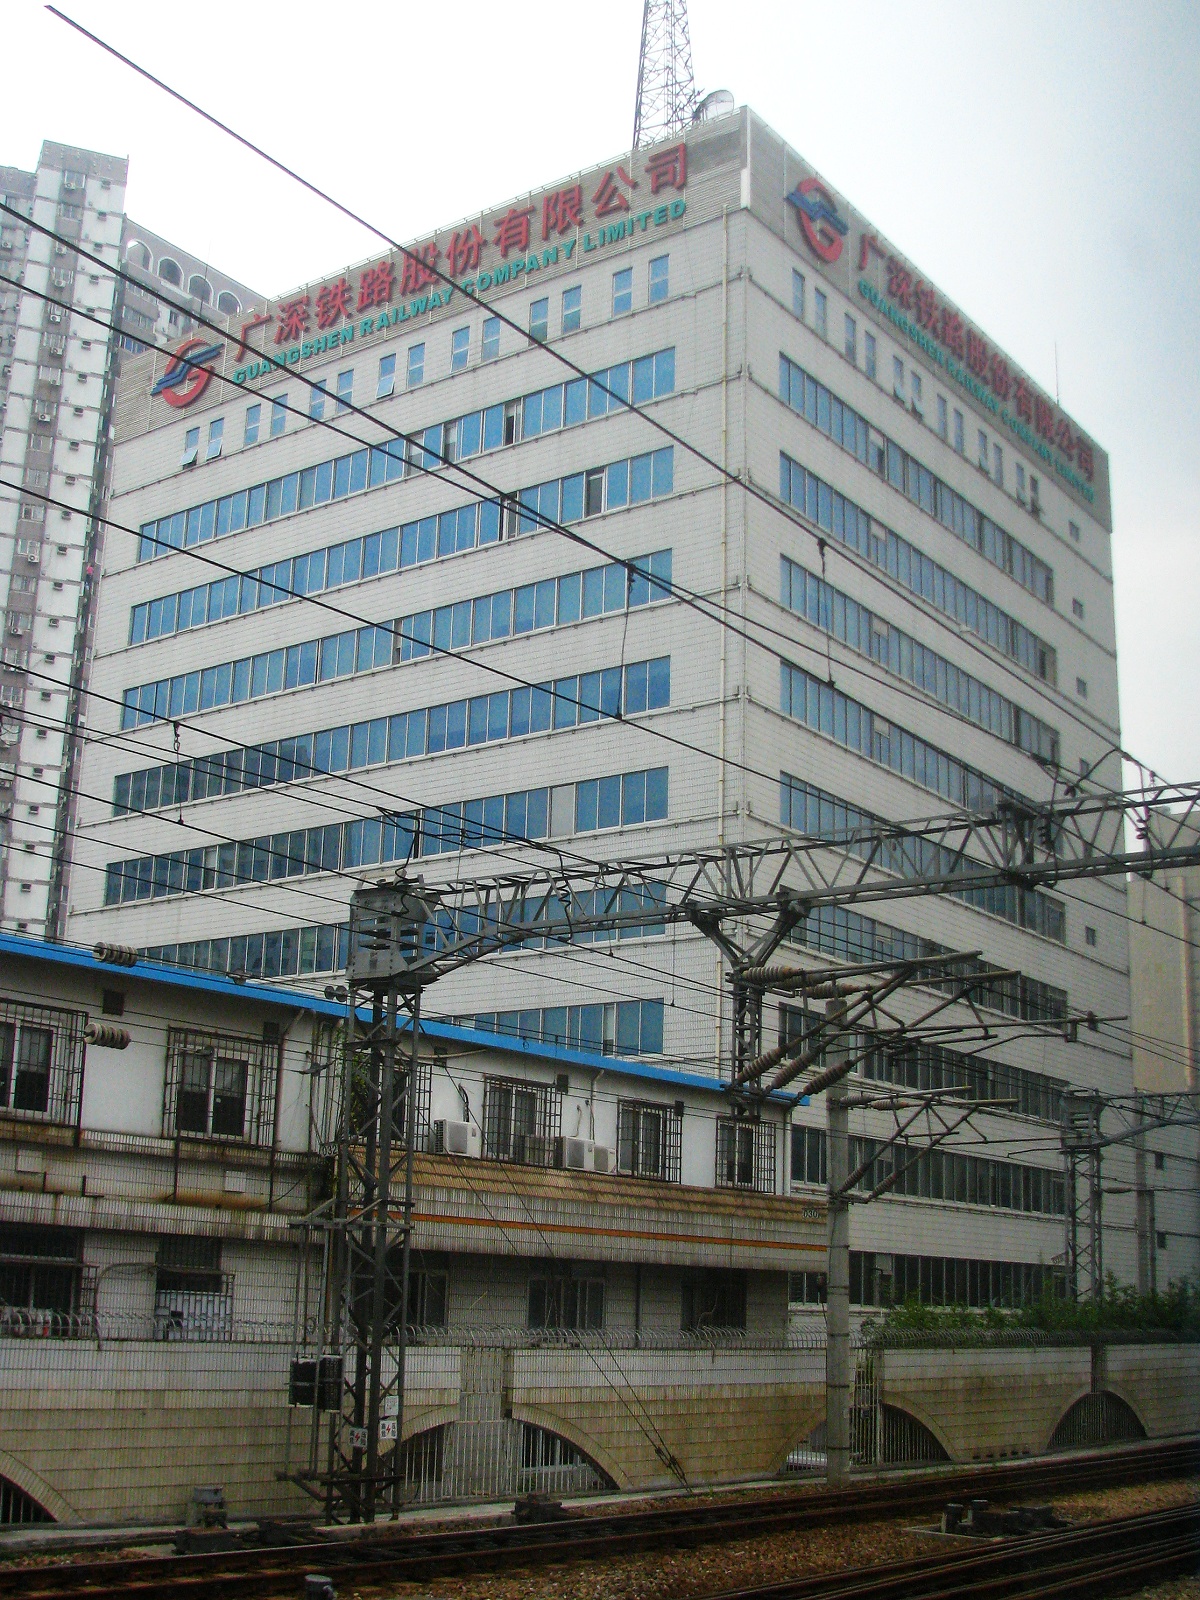 位於深圳市羅湖區的廣深鐵路股份有限公司總部大樓